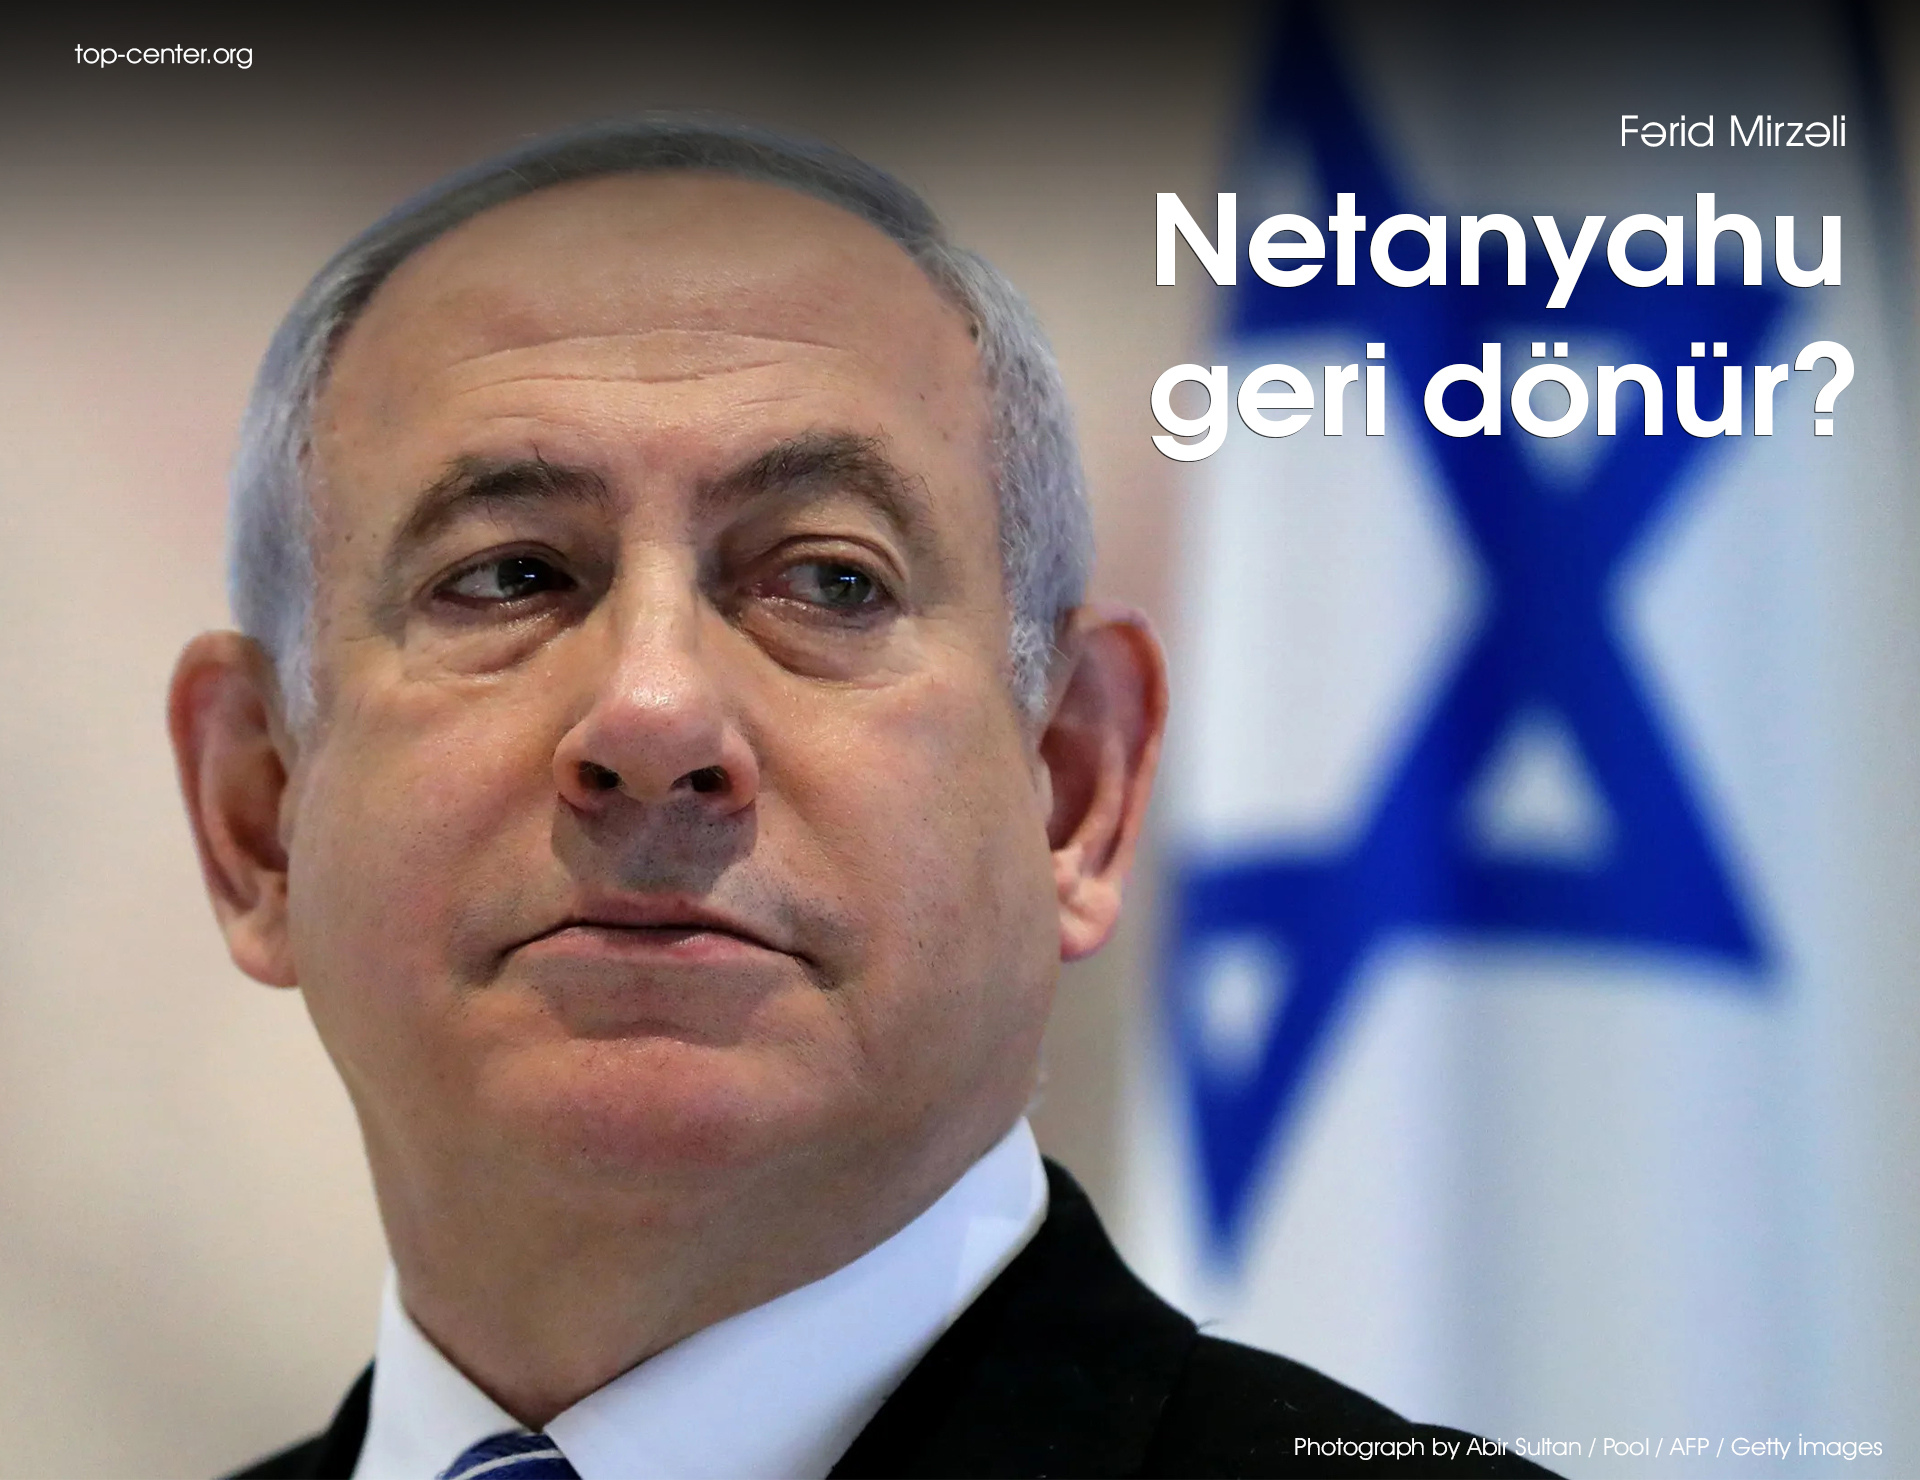 Netanyahu geri dönür?